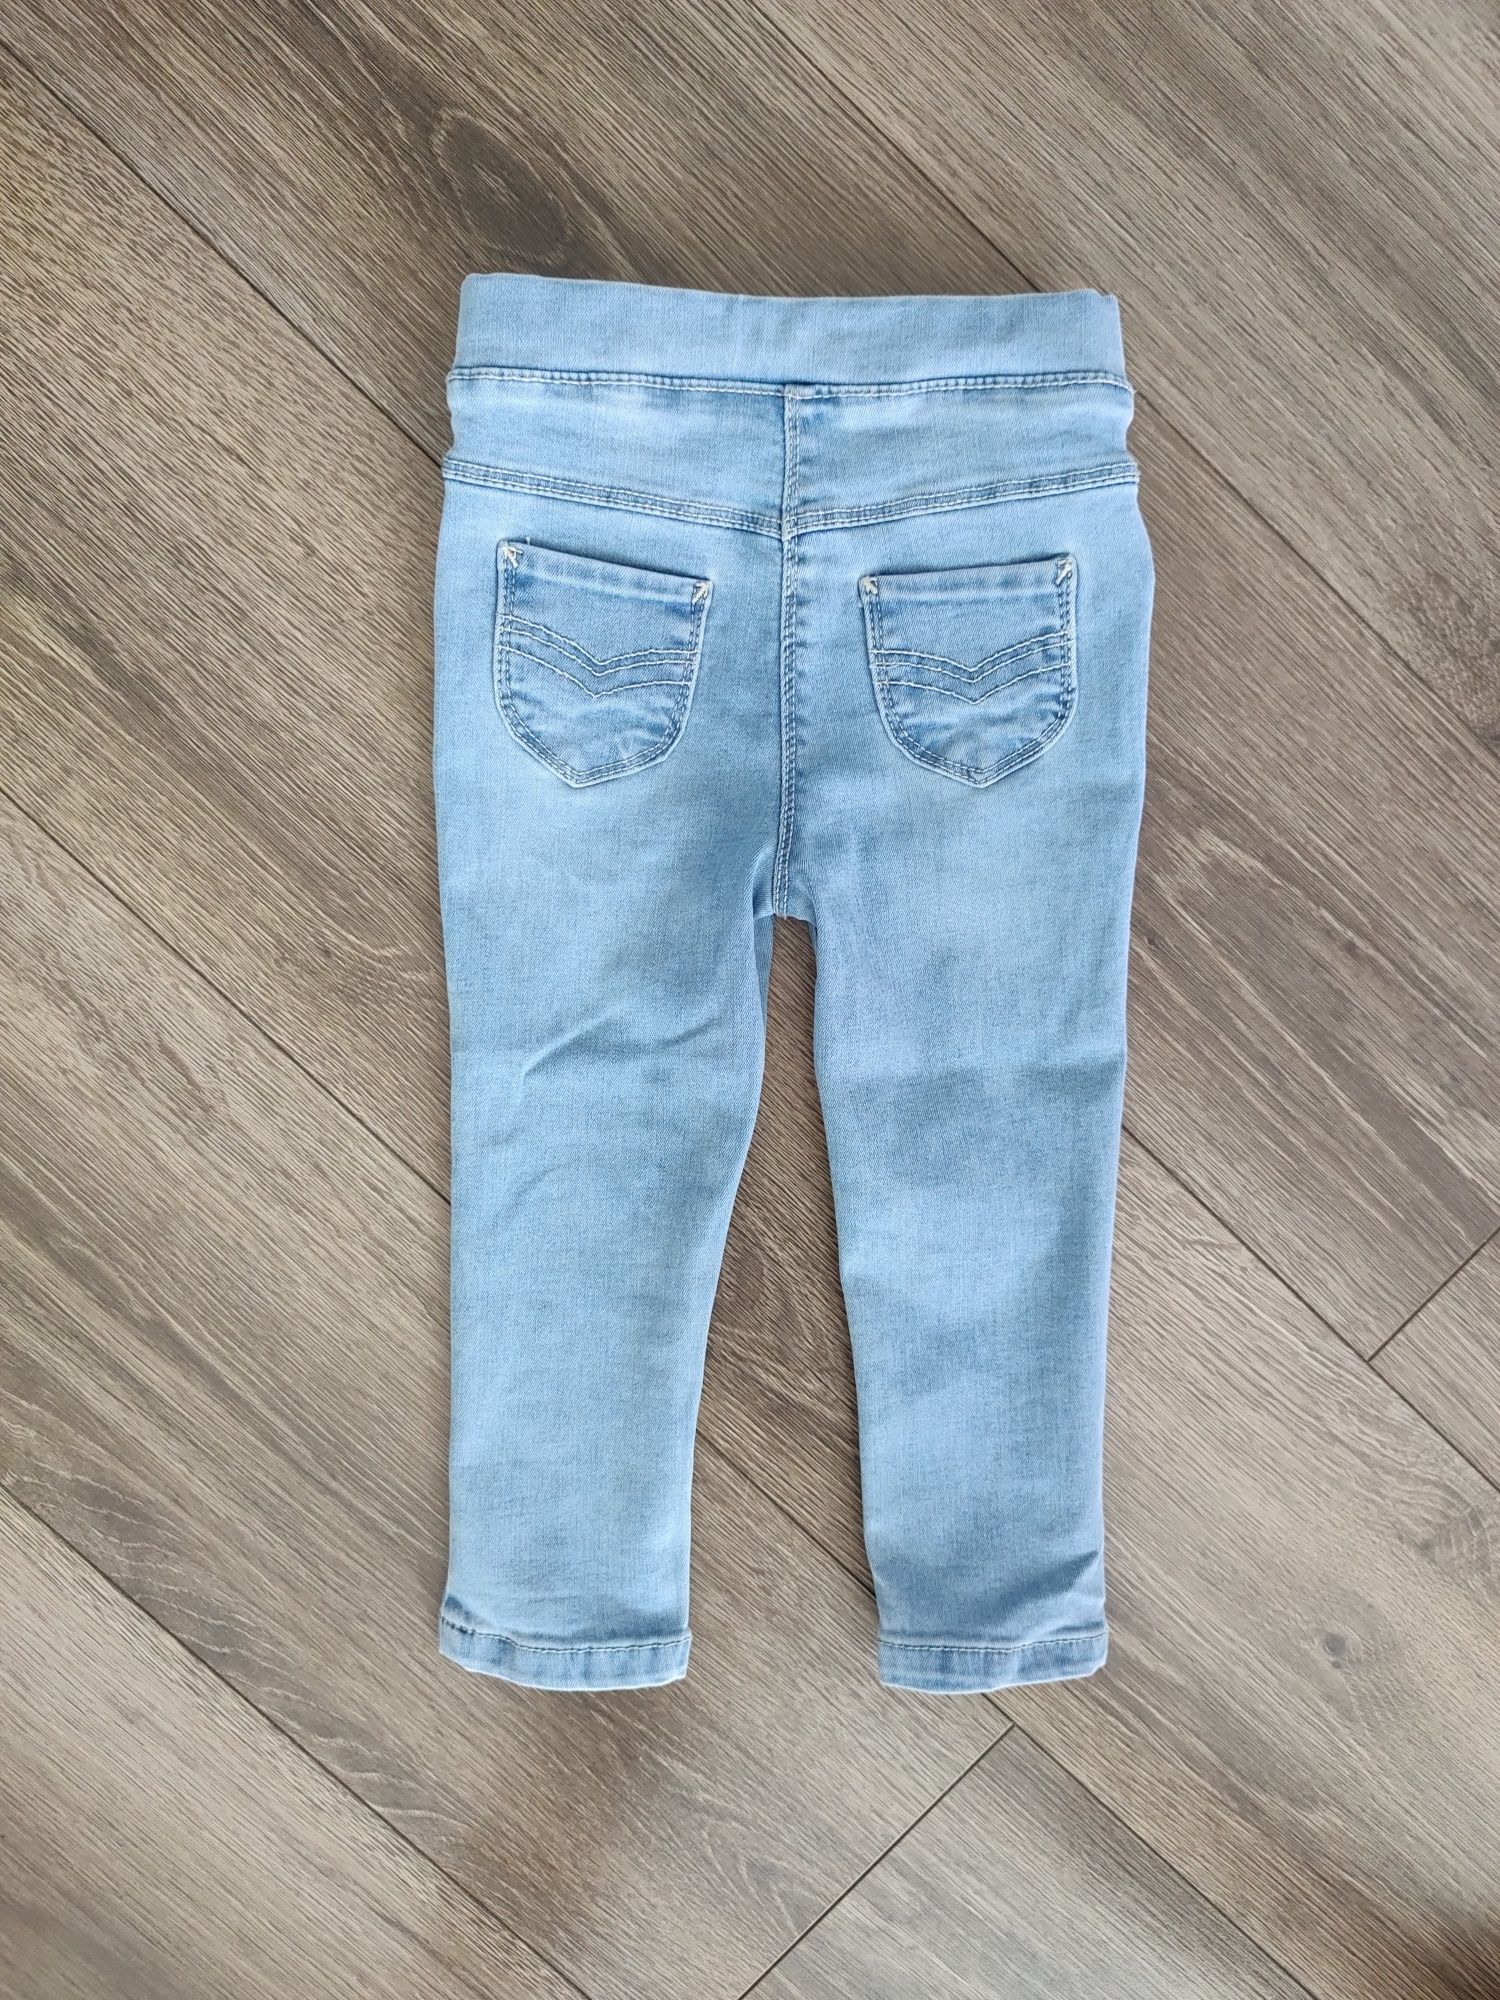 Skinny jeans jasne jeansy spodnie TAO Tape a l'oeil rozm.98